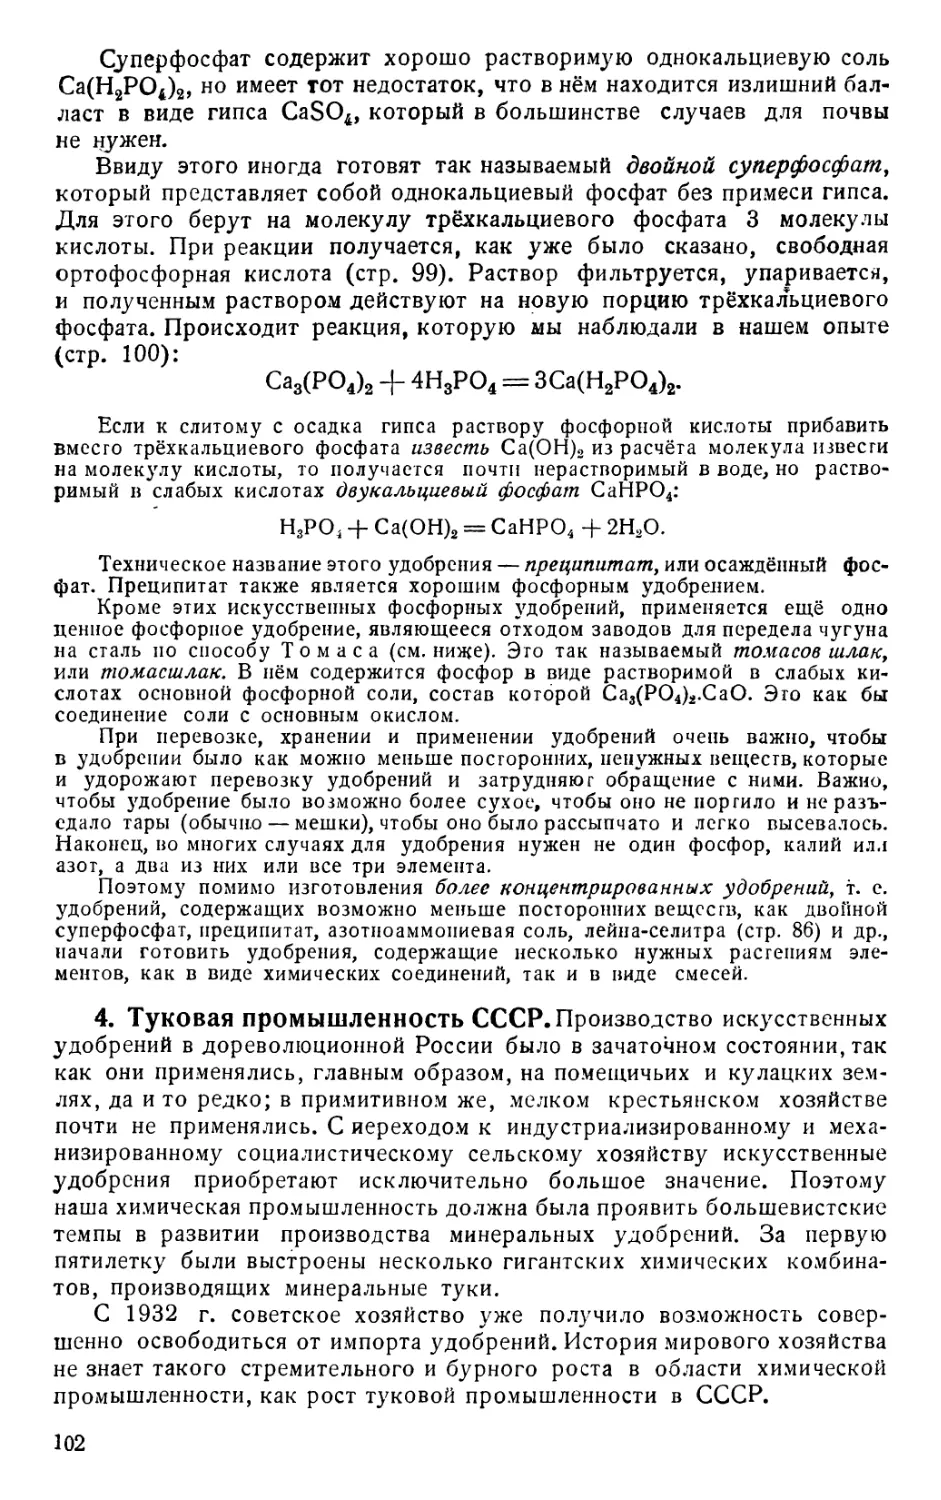 4. Туковая промышленность СССР